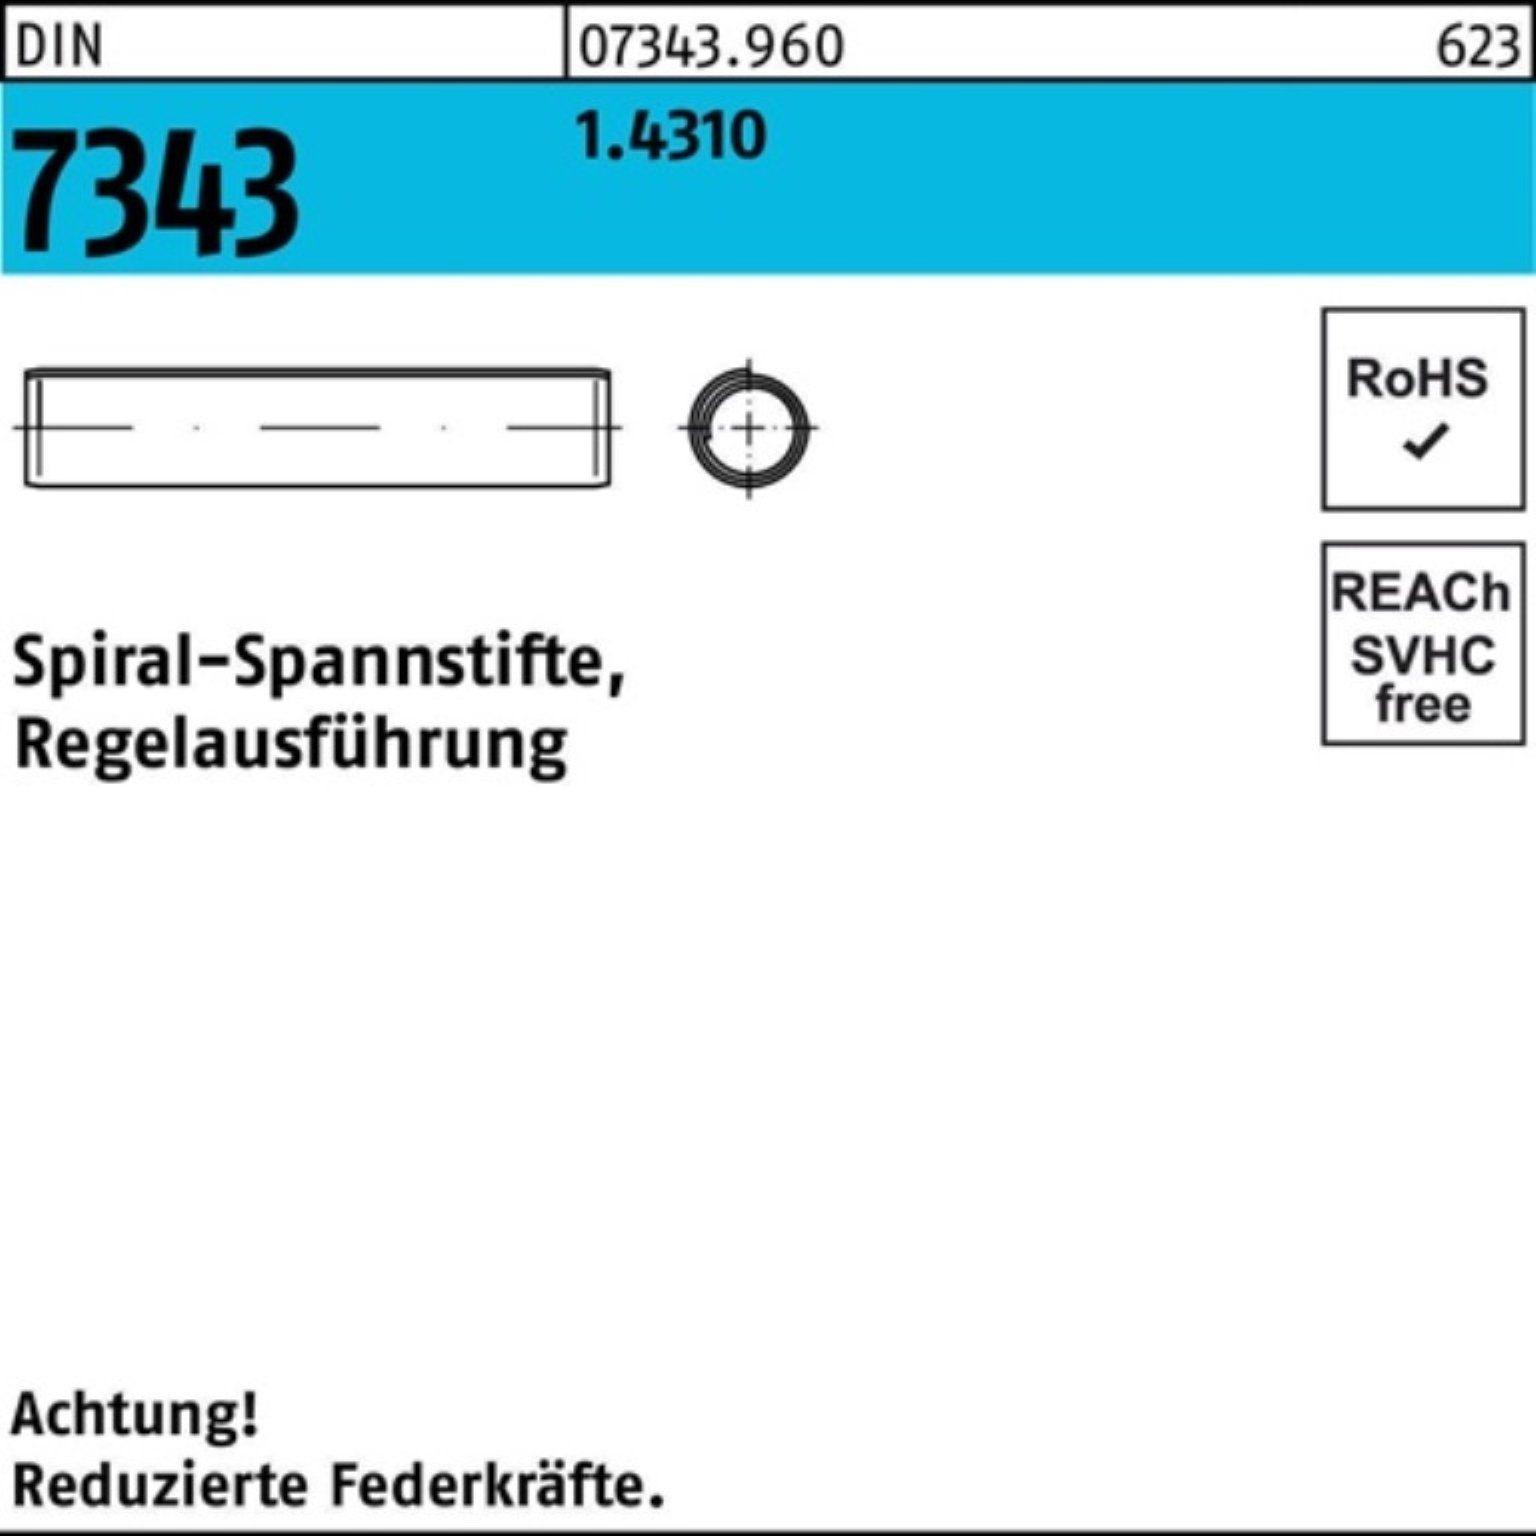 Reyher Spannstift 500er Regelausf. 1.4310 DIN Pack 22 8750 Spiralspannstift 8x 7343/ISO